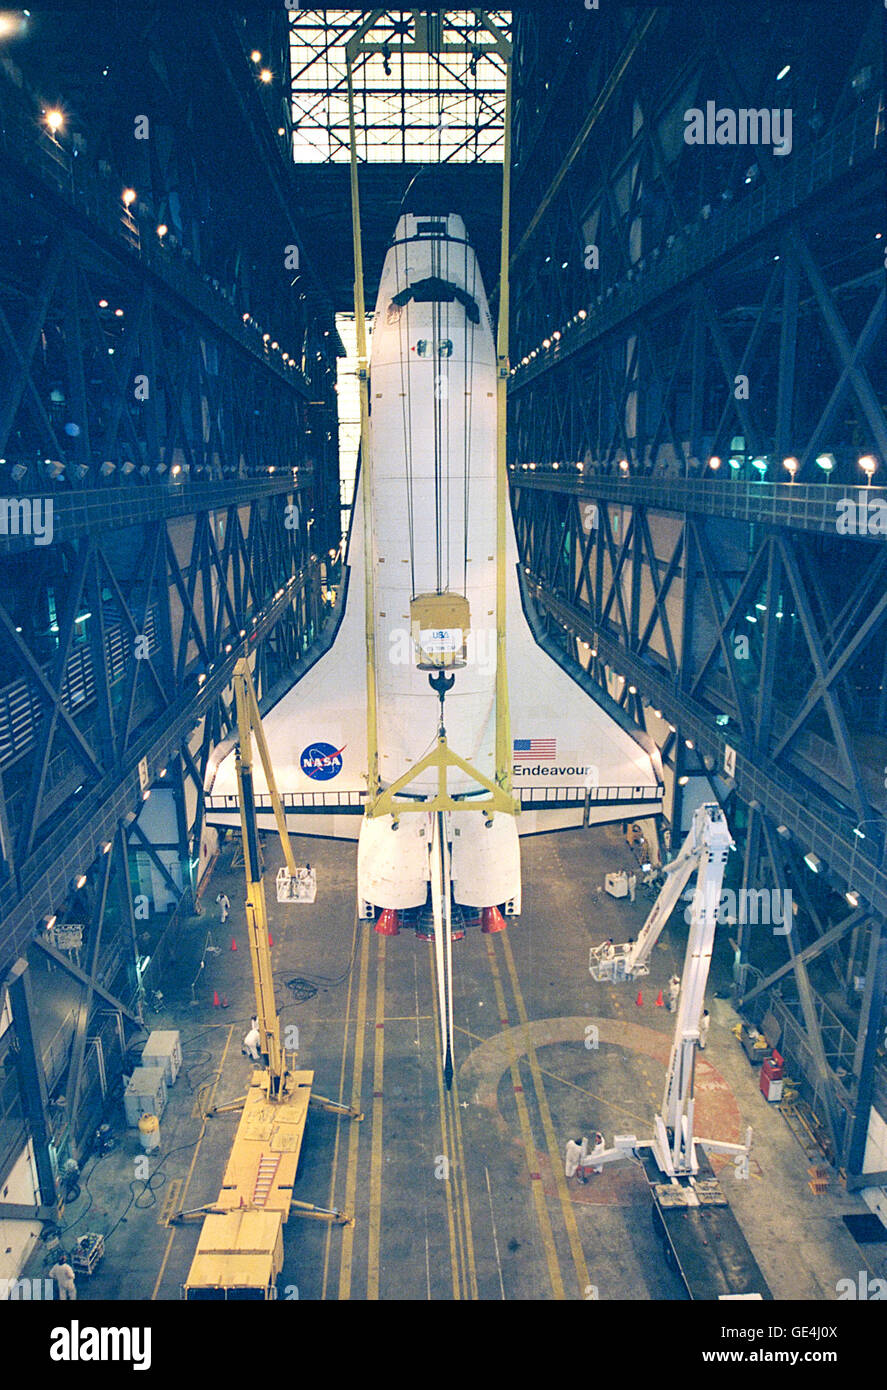 Der Orbiter Endeavour ruht in einer vertikalen Position im Vehicle Assembly Building wo es gepaart wird mit Außentank und Feststoffraketen. Endeavour wird voraussichtlich am 3. Dezember 1998 auf Mission STS-88, das erste Space Shuttle-Flug für den Zusammenbau der internationalen Raumstation ISS fliegen. Die primäre Nutzlast der Mission ist die Einheit verbindende Modul, welches die Russland gebauten Sarja-Steuermodul bereits im Orbit zu diesem Zeitpunkt gedeckt werden wird.   Bild-Nr.: 98PC-1341 Stockfoto